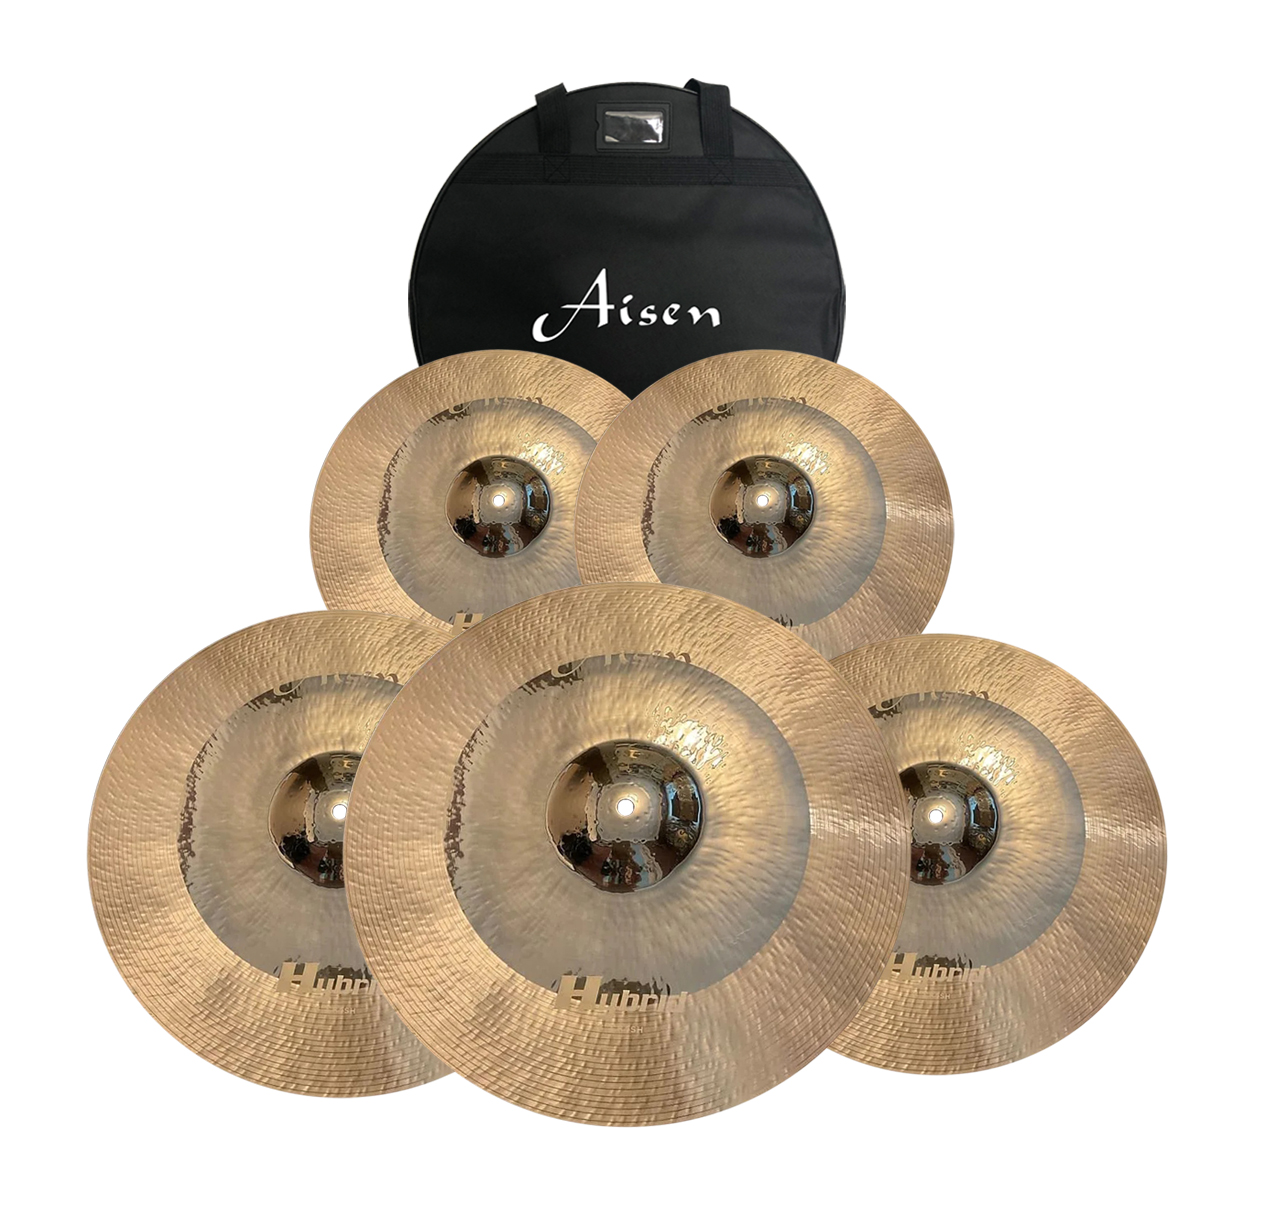 Тарелки, барабаны для ударных установок AISEN B20 HYBRID CYMBAL PACK тарелки барабаны для ударных установок aisen b20 rock cymbal pack 4 шт